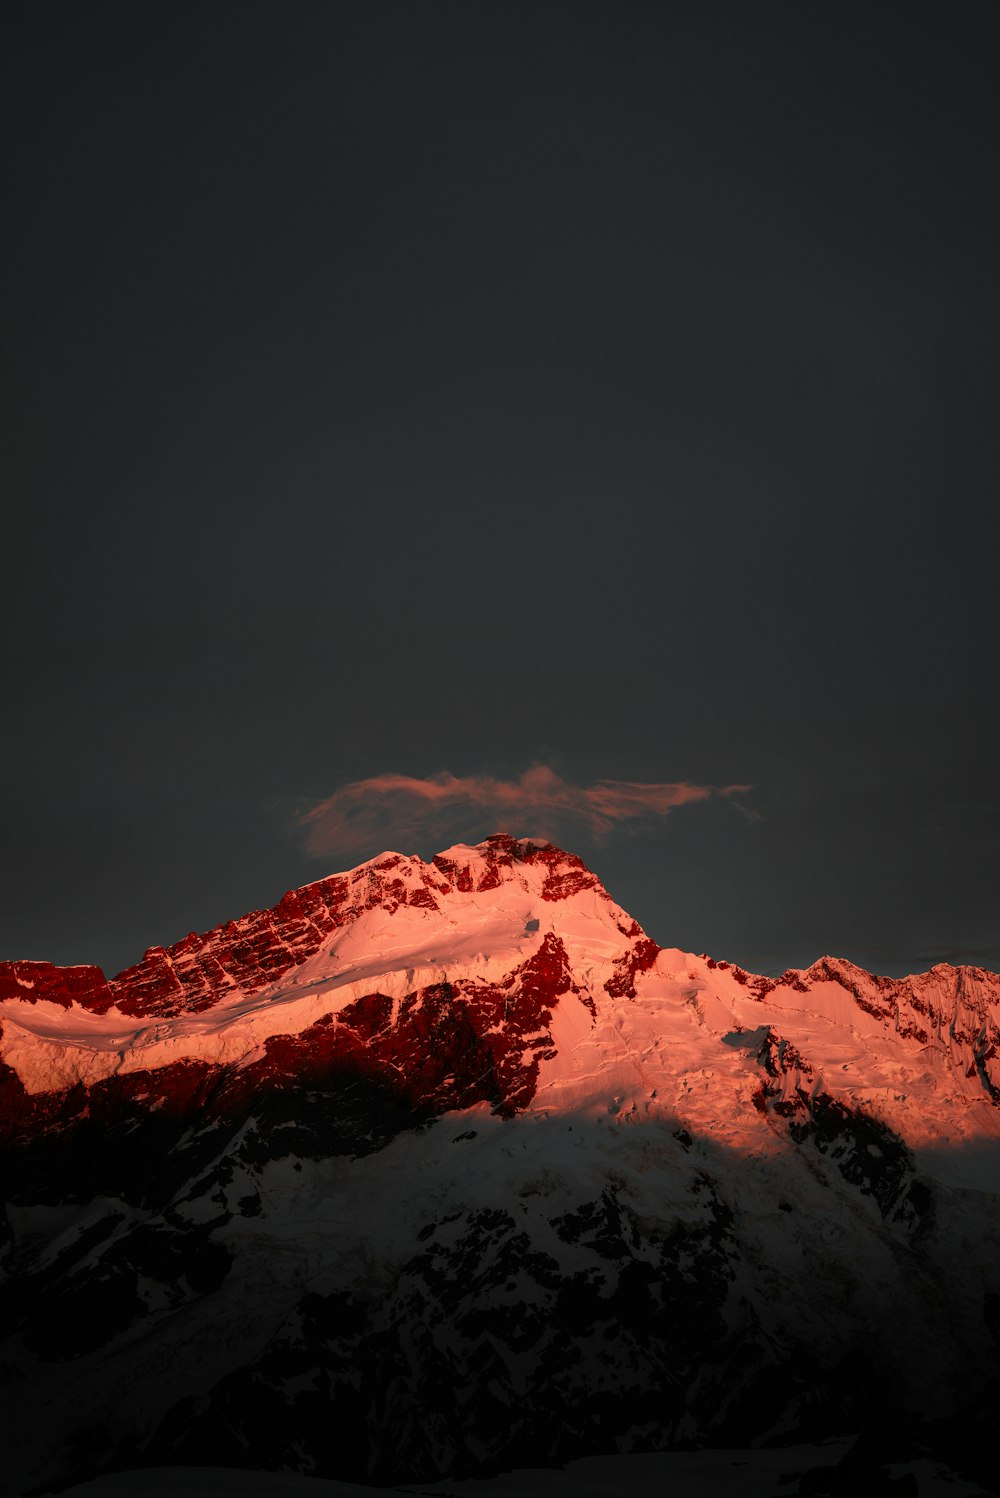 montaña cubierta de nieve bajo el cielo oscuro